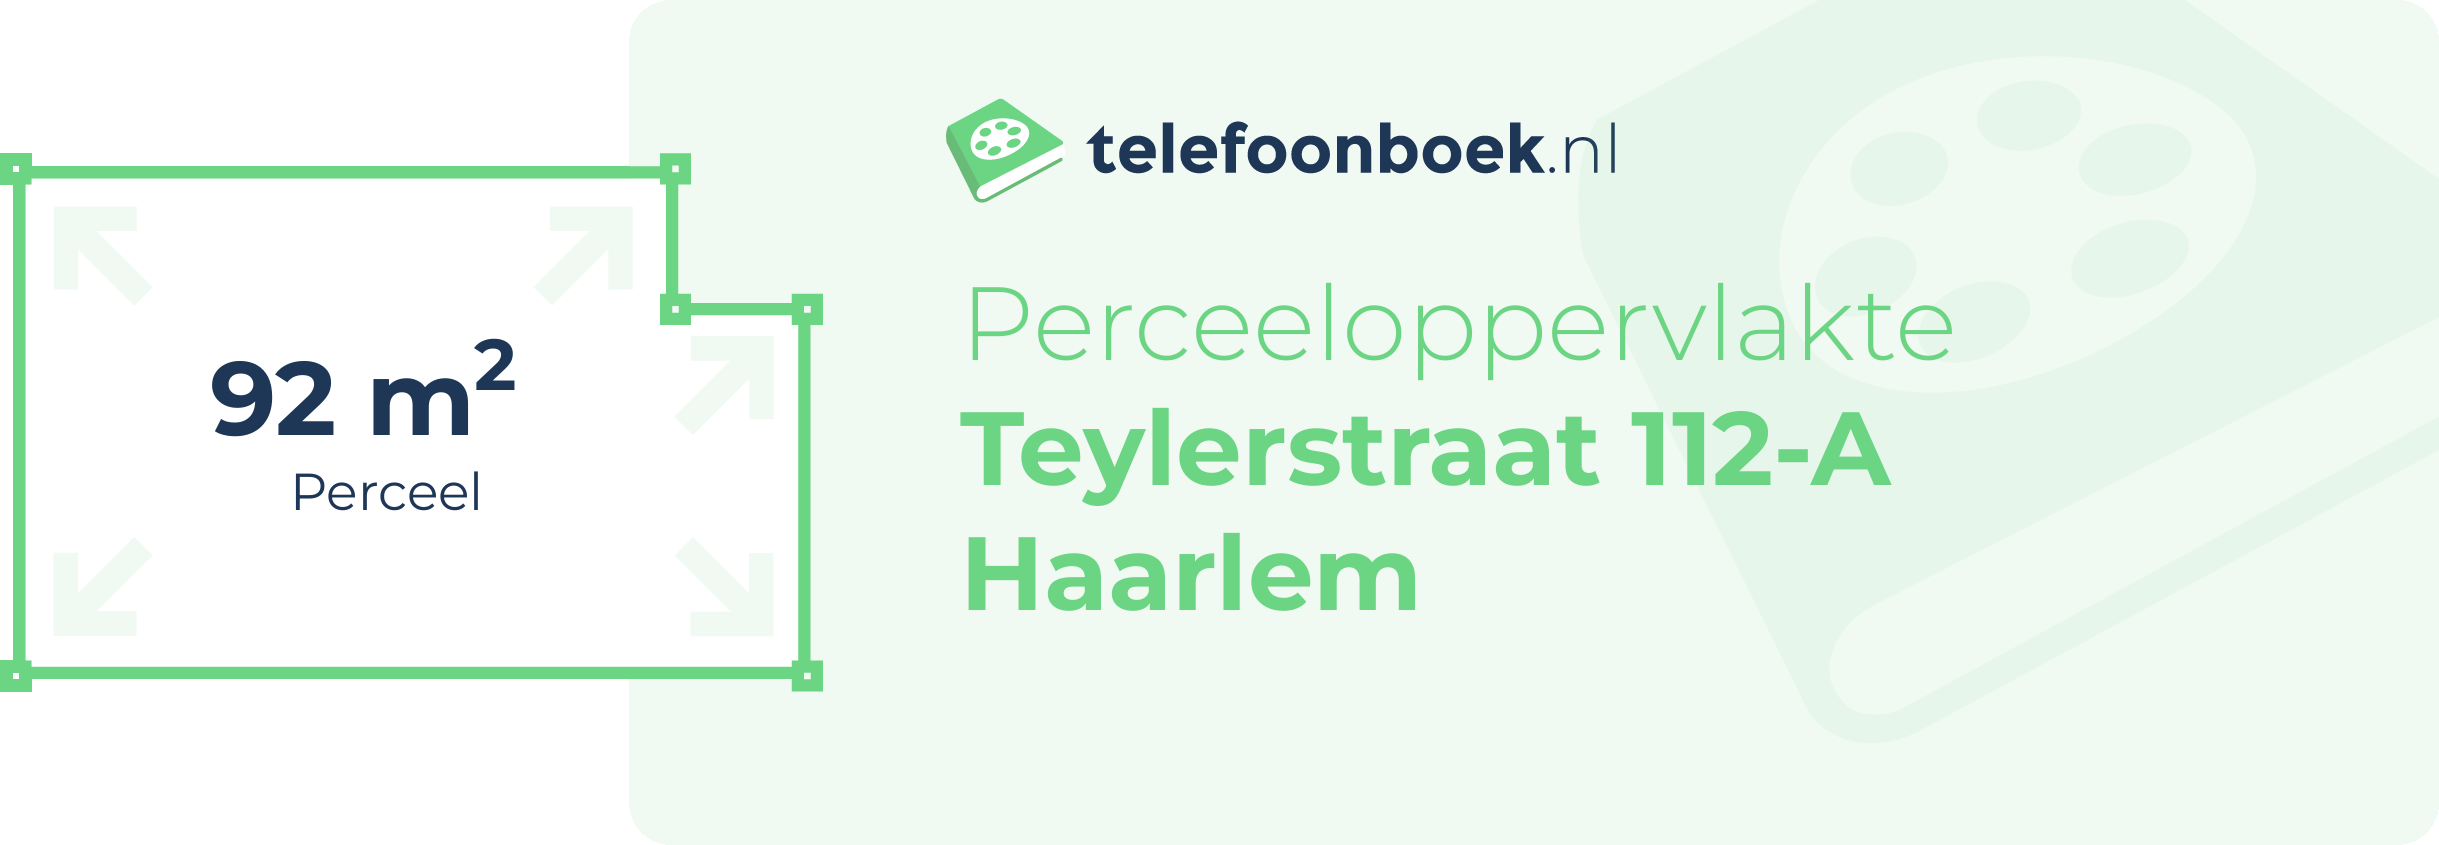 Perceeloppervlakte Teylerstraat 112-A Haarlem